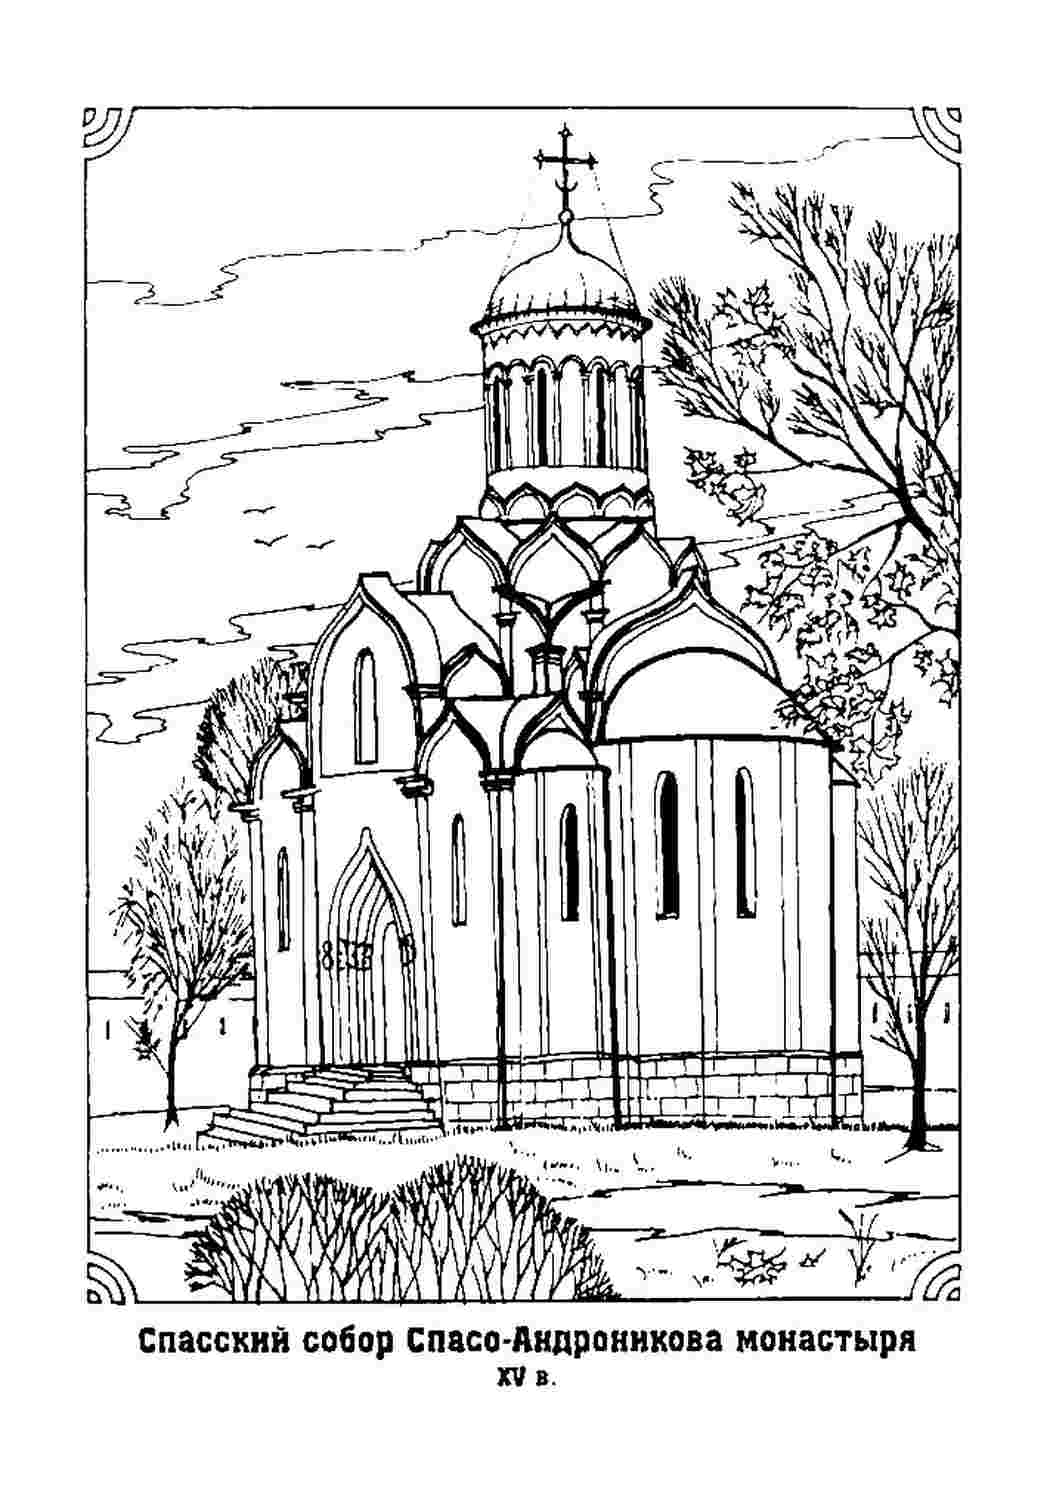 BK-GX26089 Картина раскраска Купола собора Святого Марка (Без коробки)